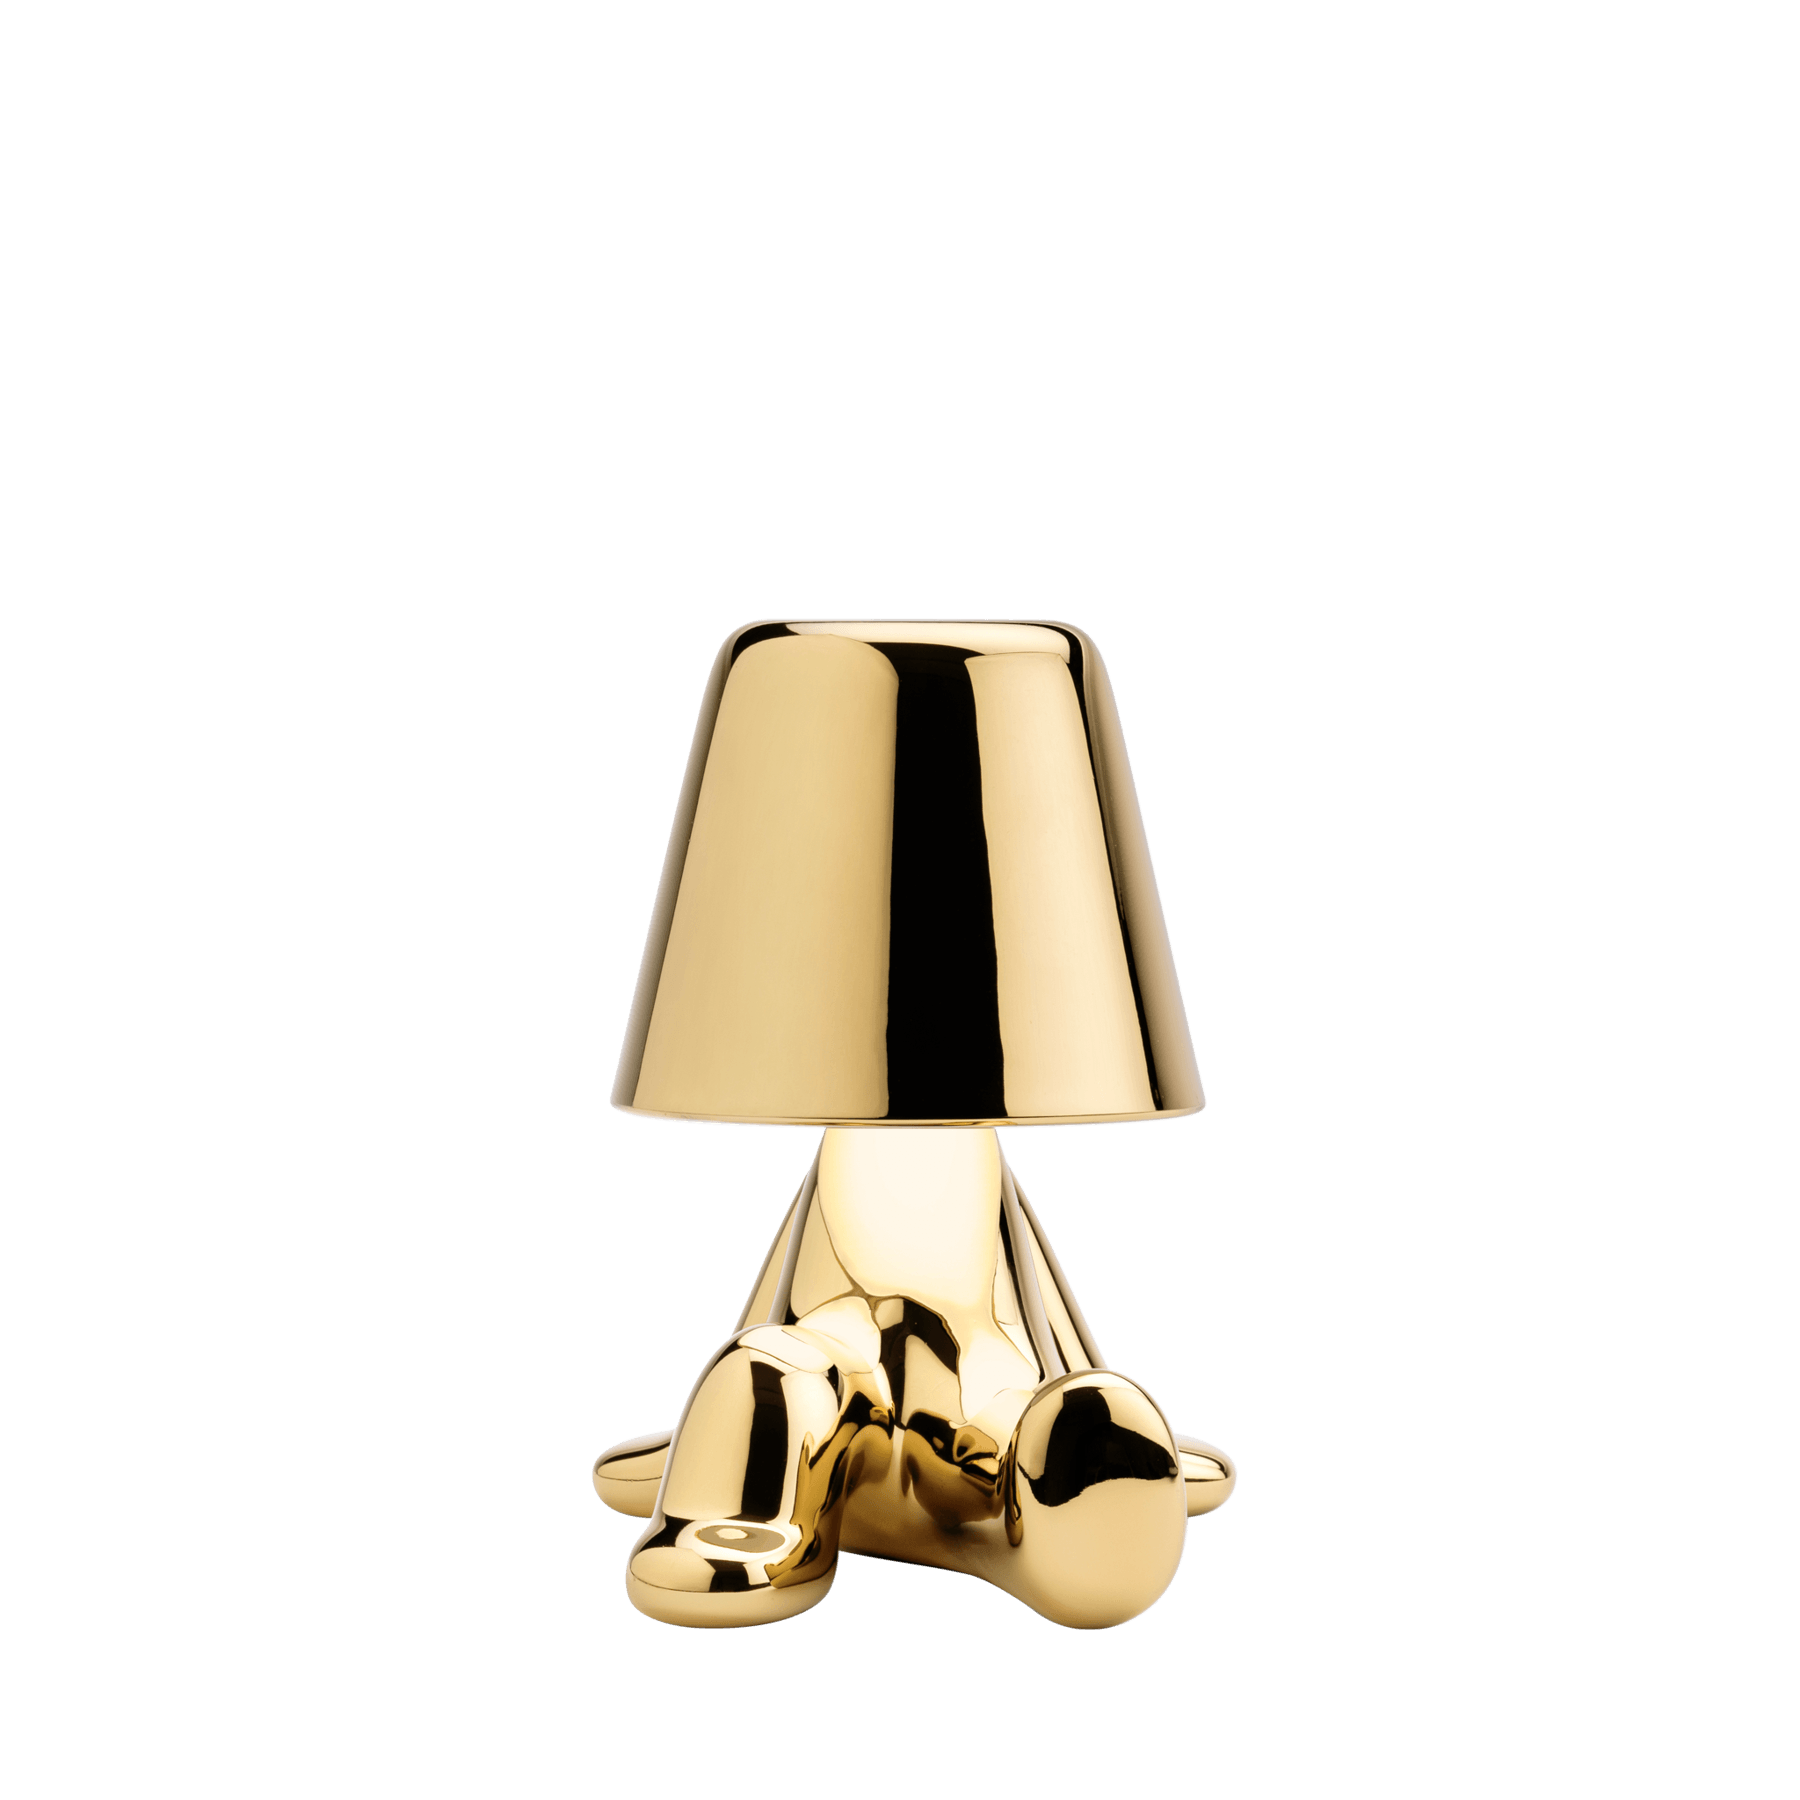 Lampa Golden Brothers / Bob - Qeeboo - PARIS14A.RO